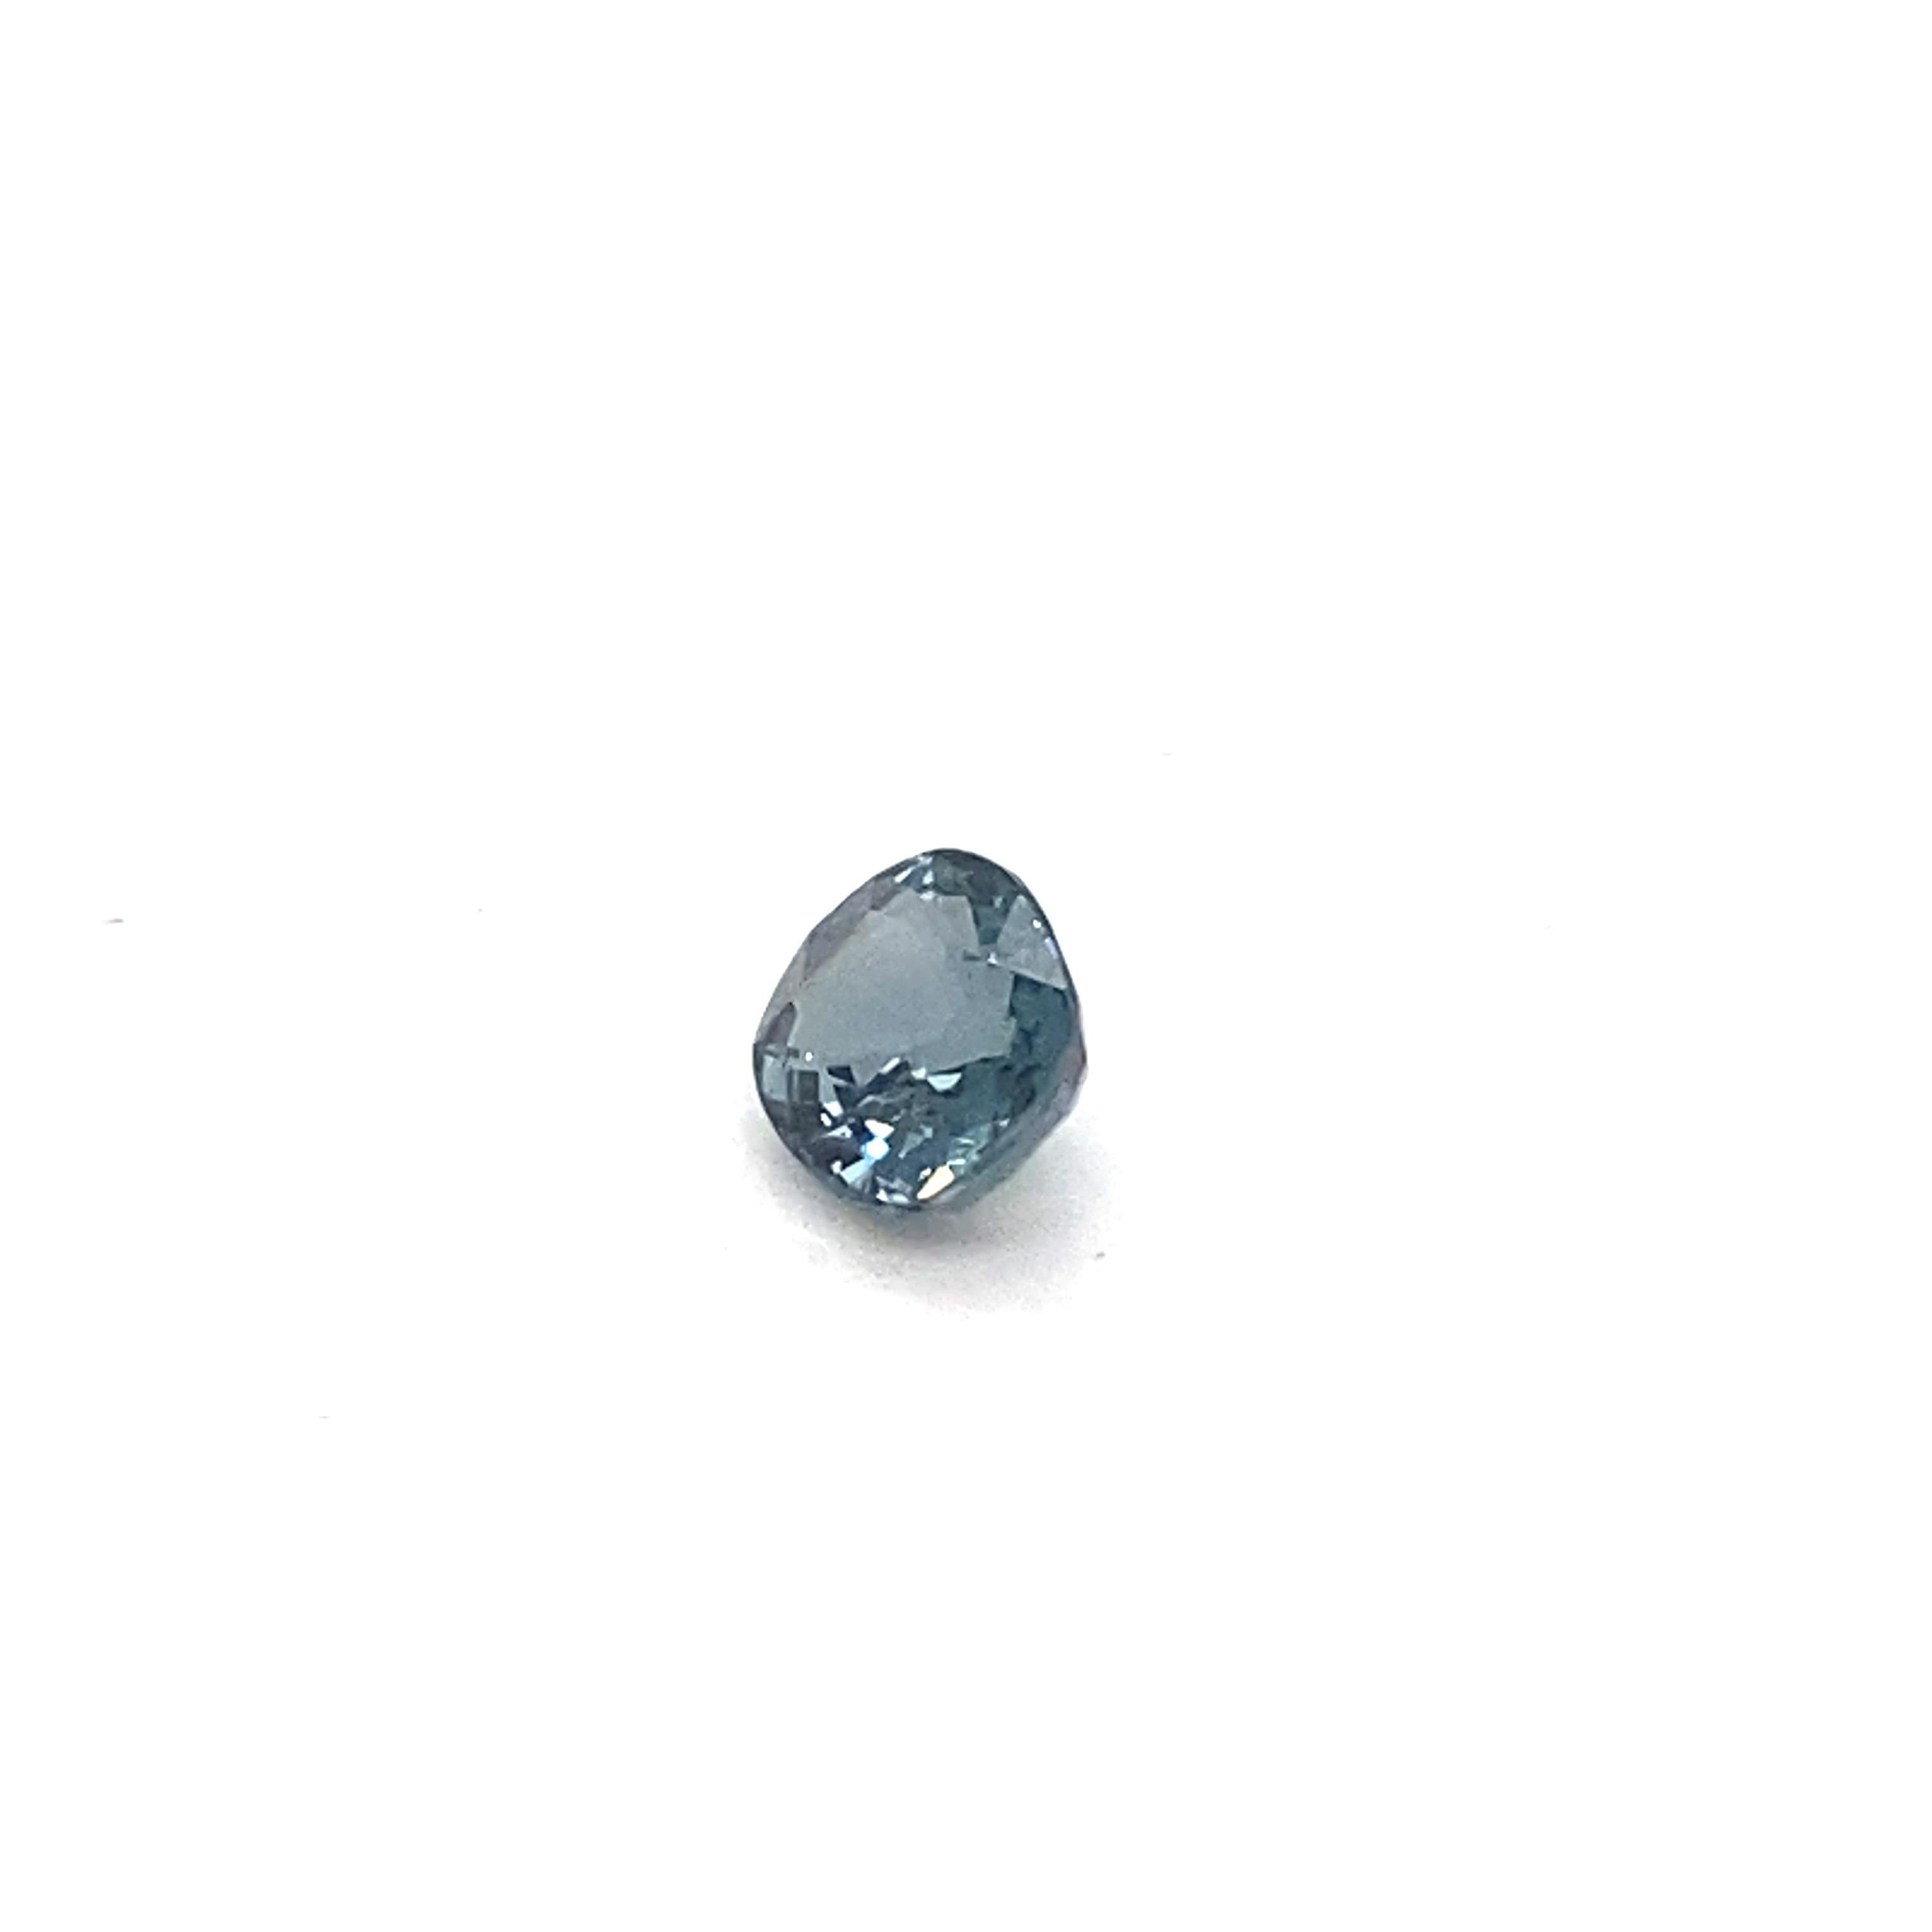 Artisan 1.9 Carat Oval Shape Natural Indigo Spinel Loose Gemstone  For Sale